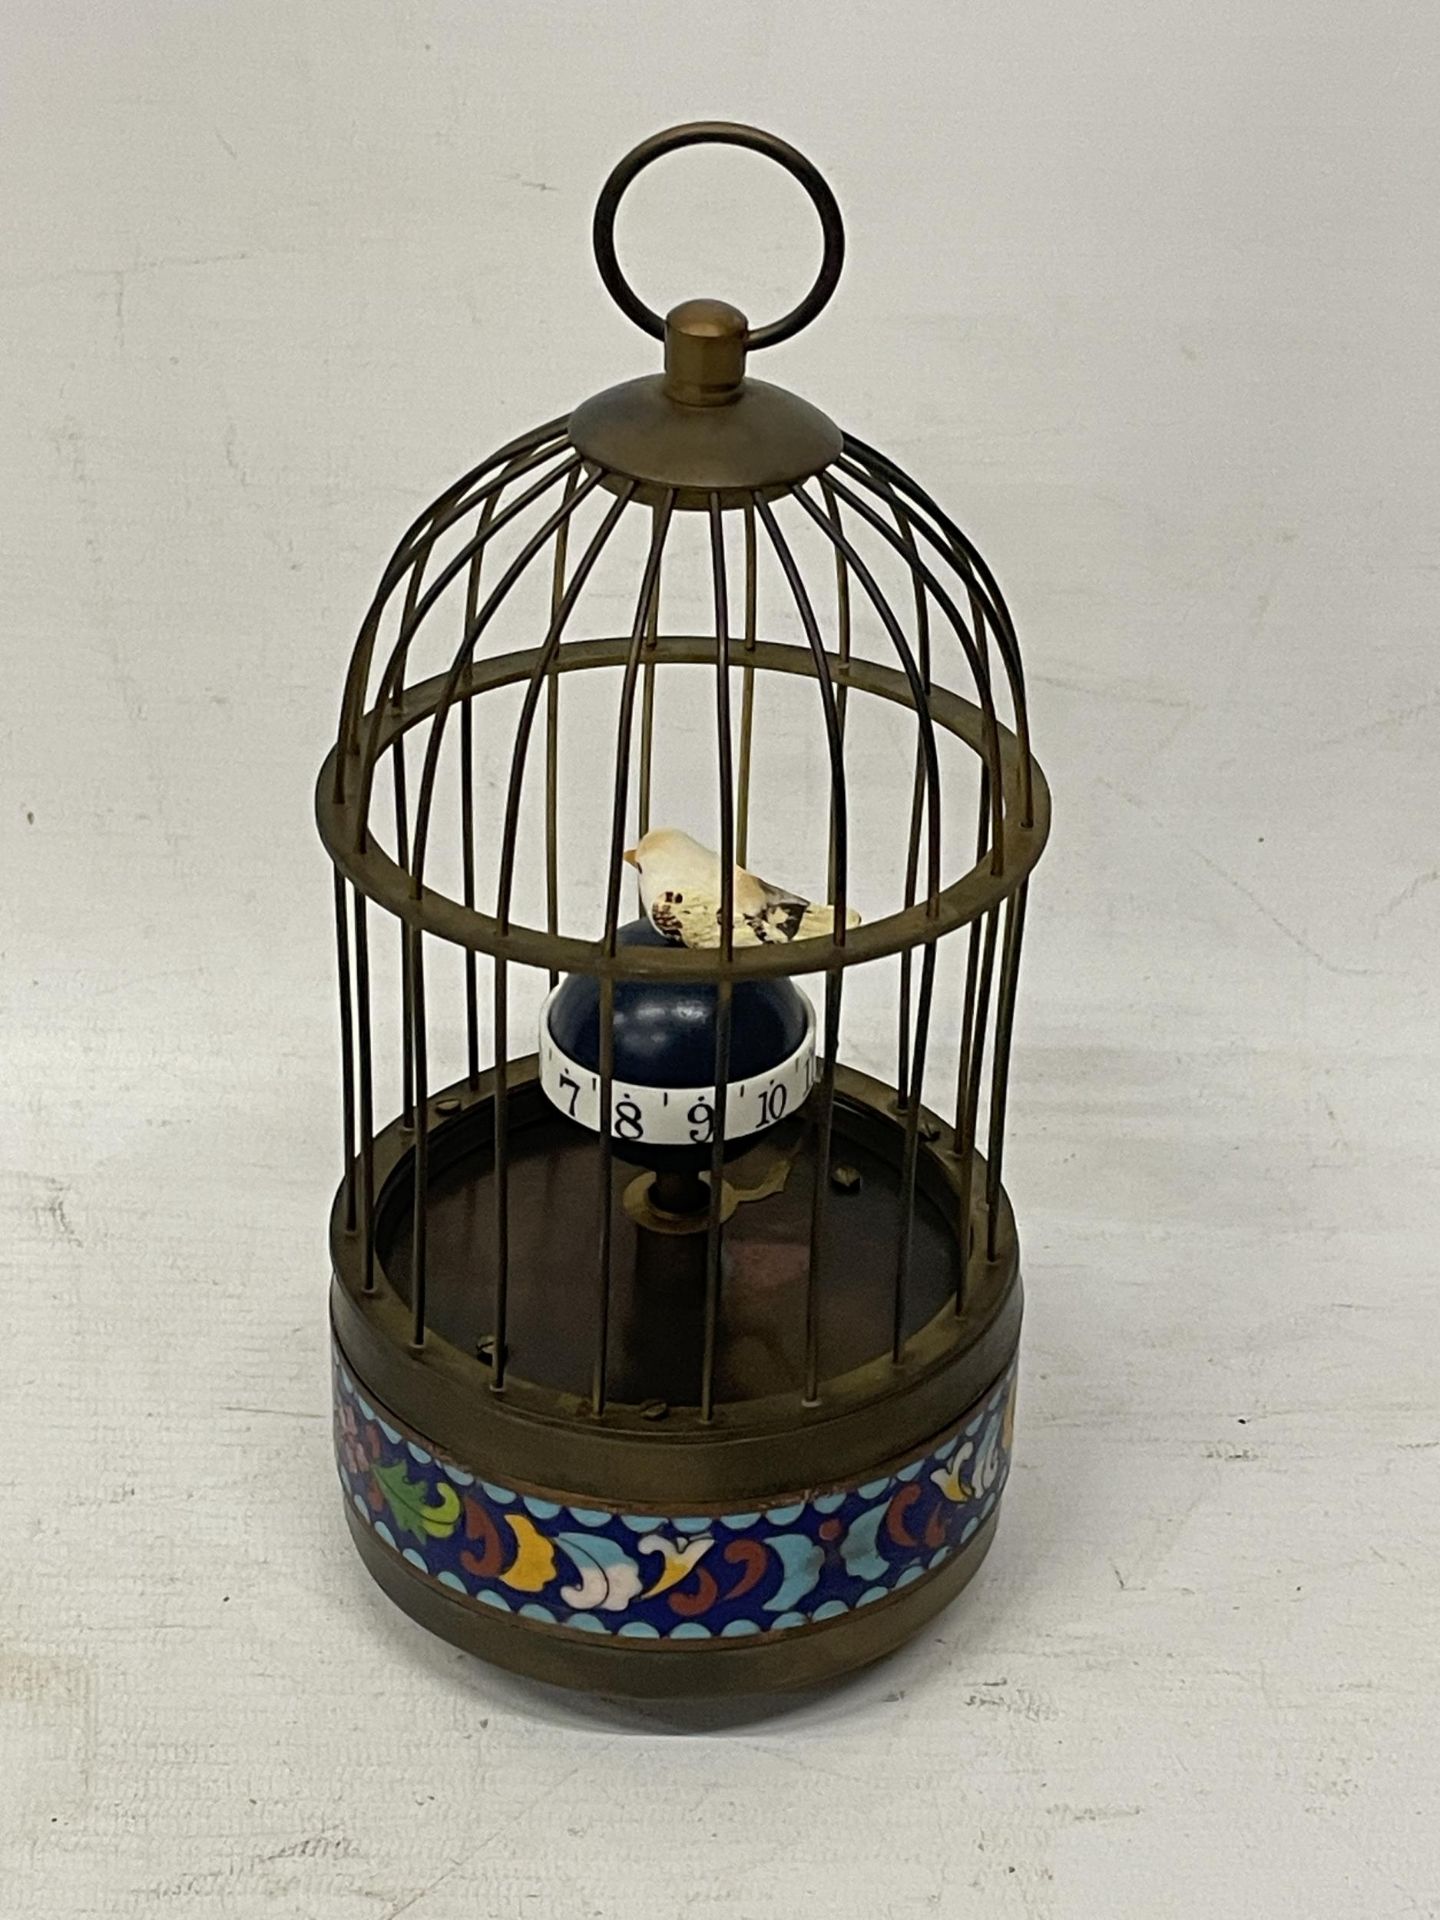 A MECHANICAL BRASS BIRD CAGE CLOCK